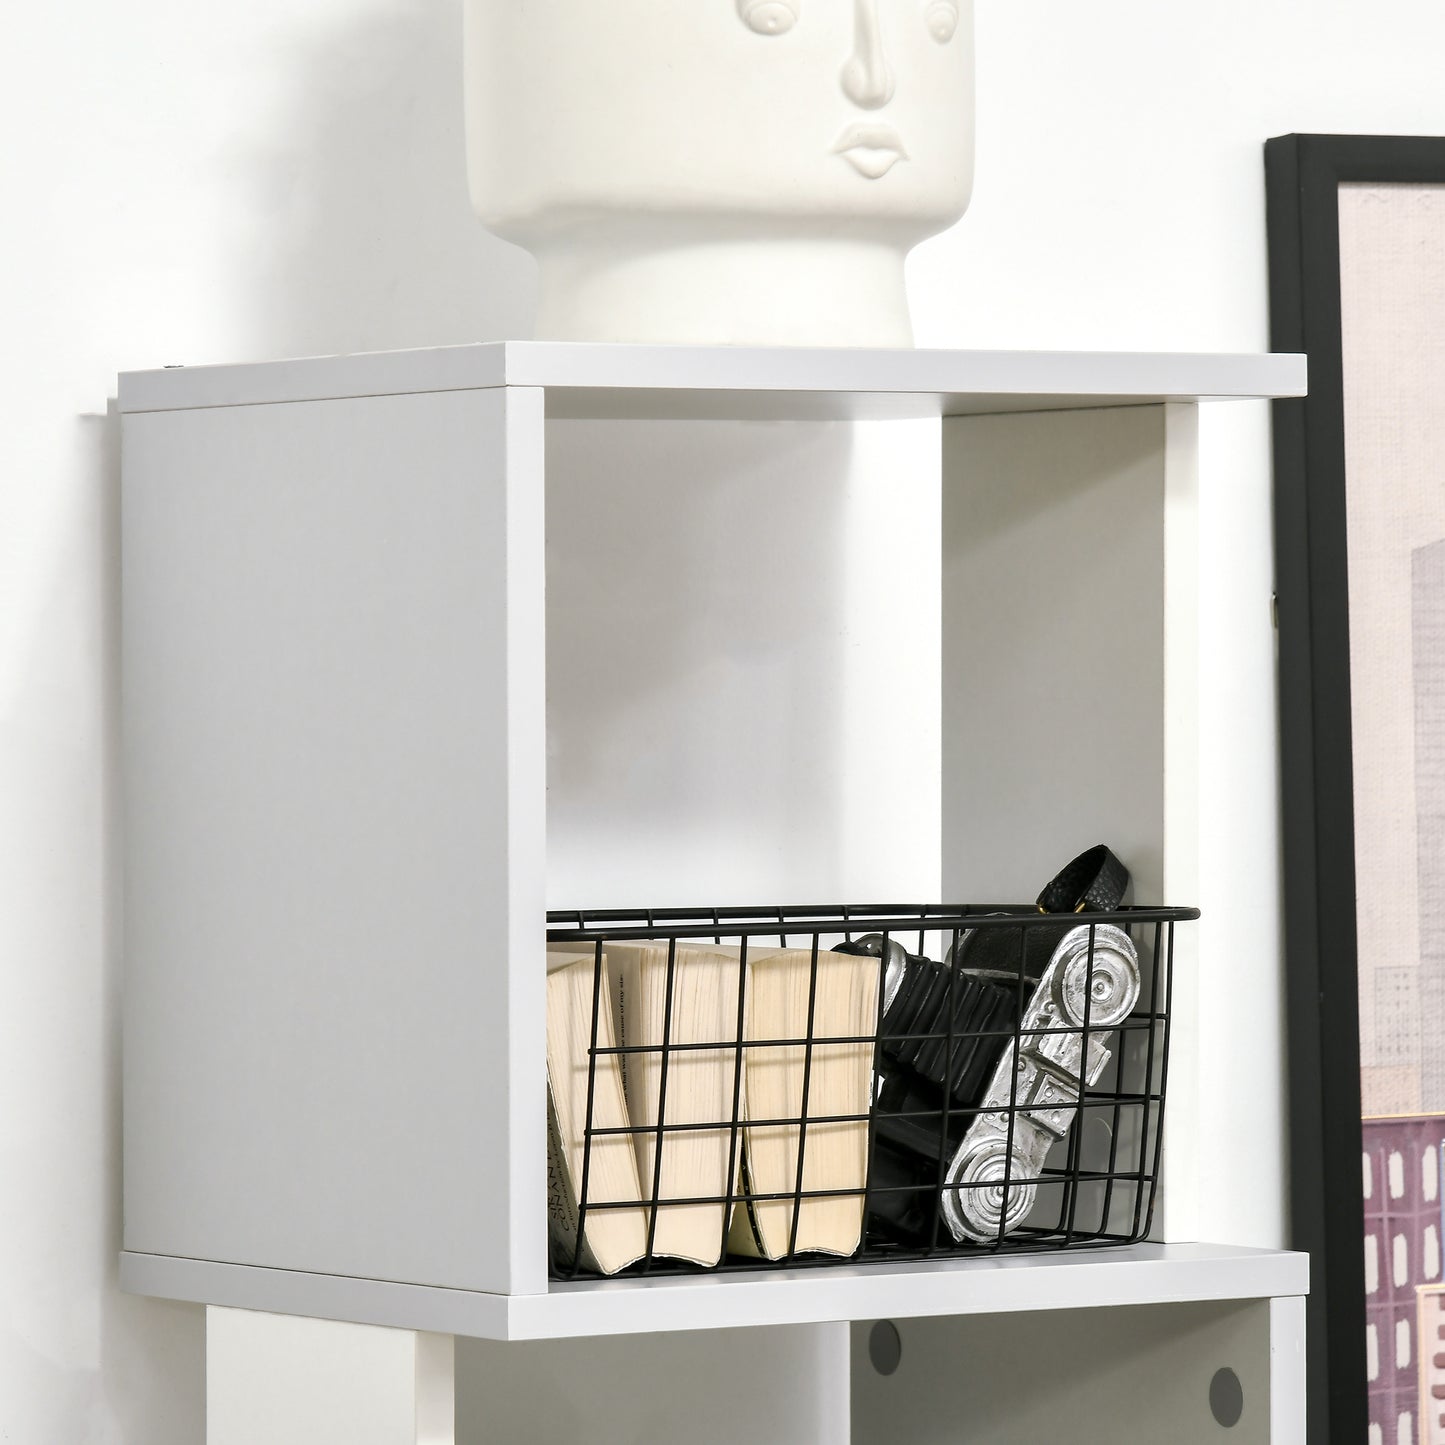 HOMCOM Modern 5-Tier Bookshelf, Freestanding Bookcase Storage Shelving for Living Room Home Office Study, Light Grey